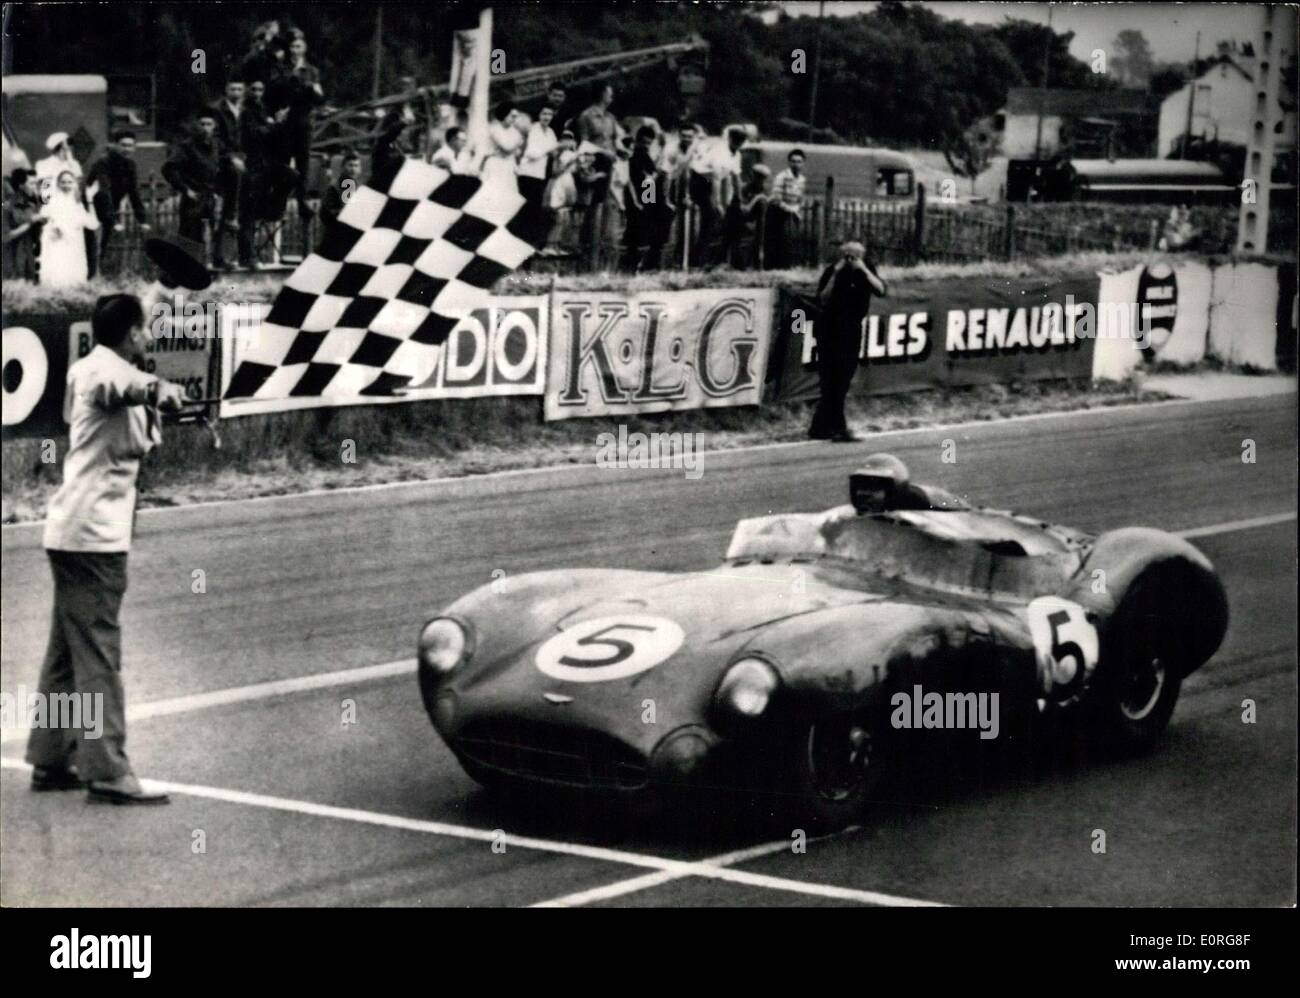 21. Juni 1959 - Ausdauer-Rennen von Le Mans 24 Stunden Sportwagen; Foto zeigt die Aston Martin angetrieben durch die amerikanische C. Schelby bei der Ankunft. Stockfoto